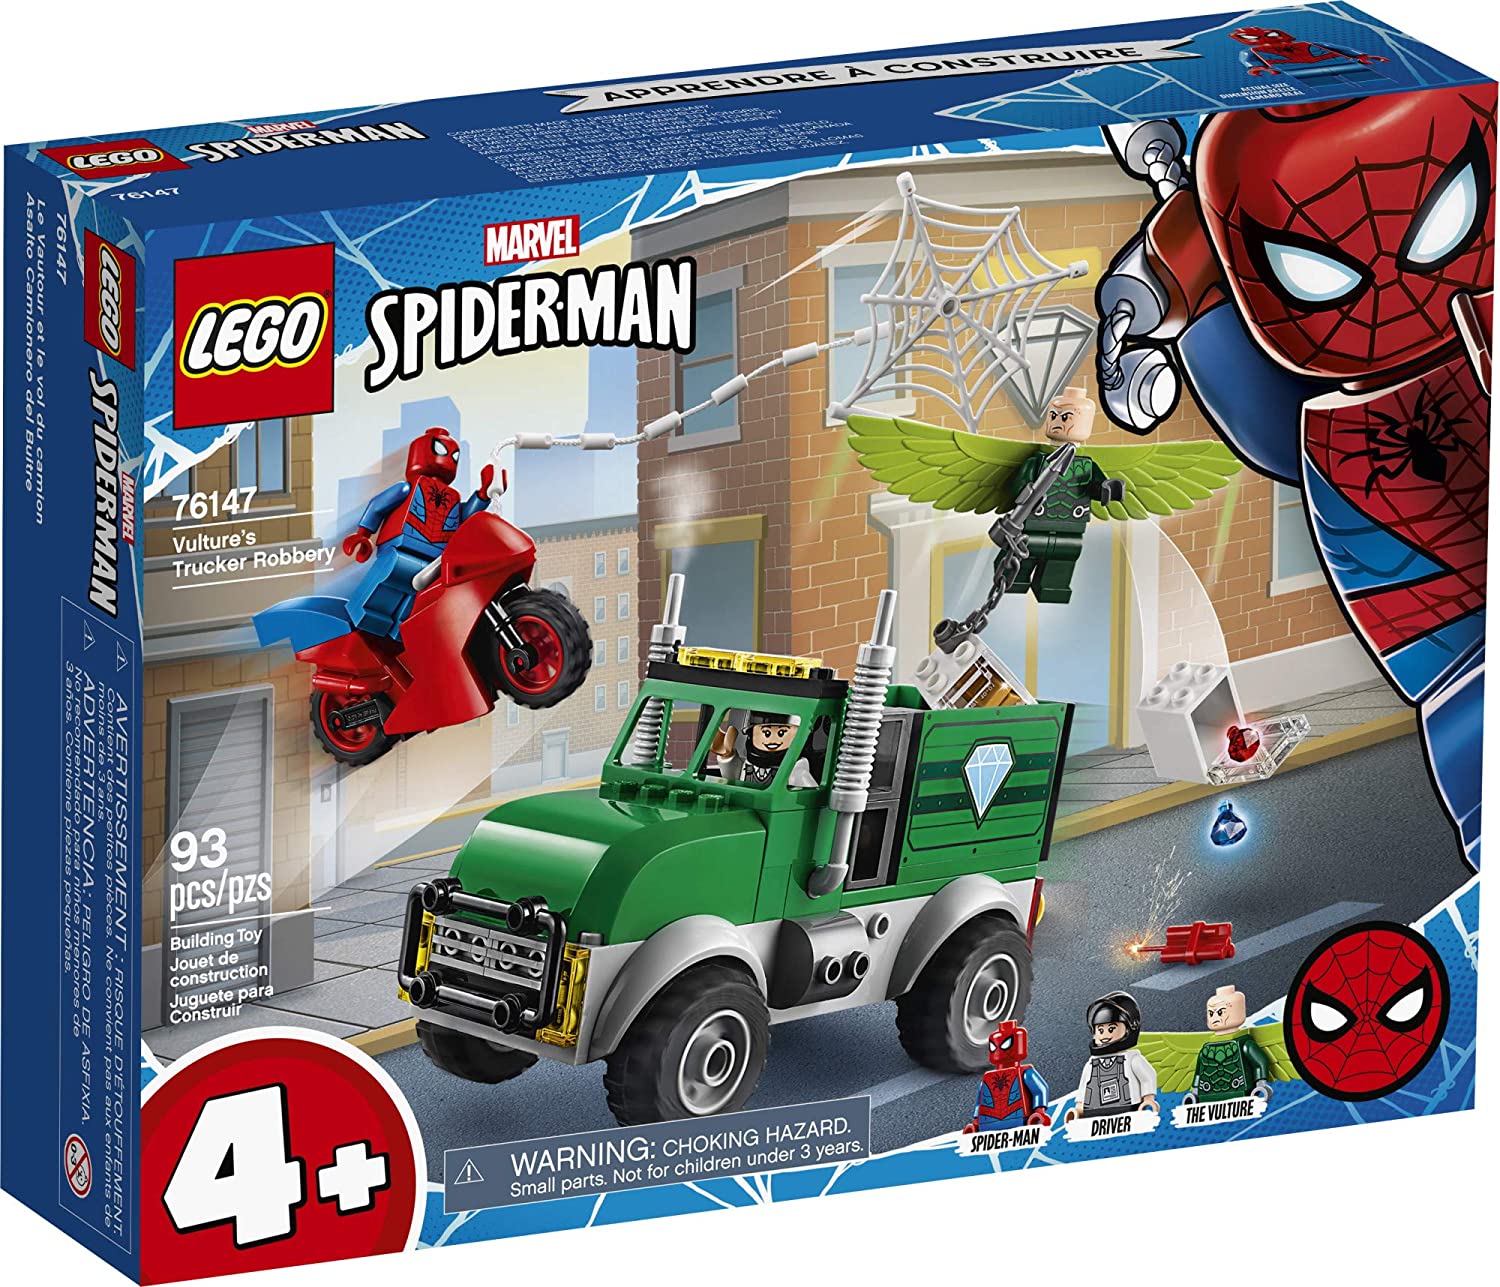 Official】LEGO Bộ đồ chơi Marvel Spiderman Condor Truck Driver Robbery 76147  với đồ chơi xe tải ngân hàng có thể xây dựng và hình siêu anh hùng mini,  mới năm 2020 (93